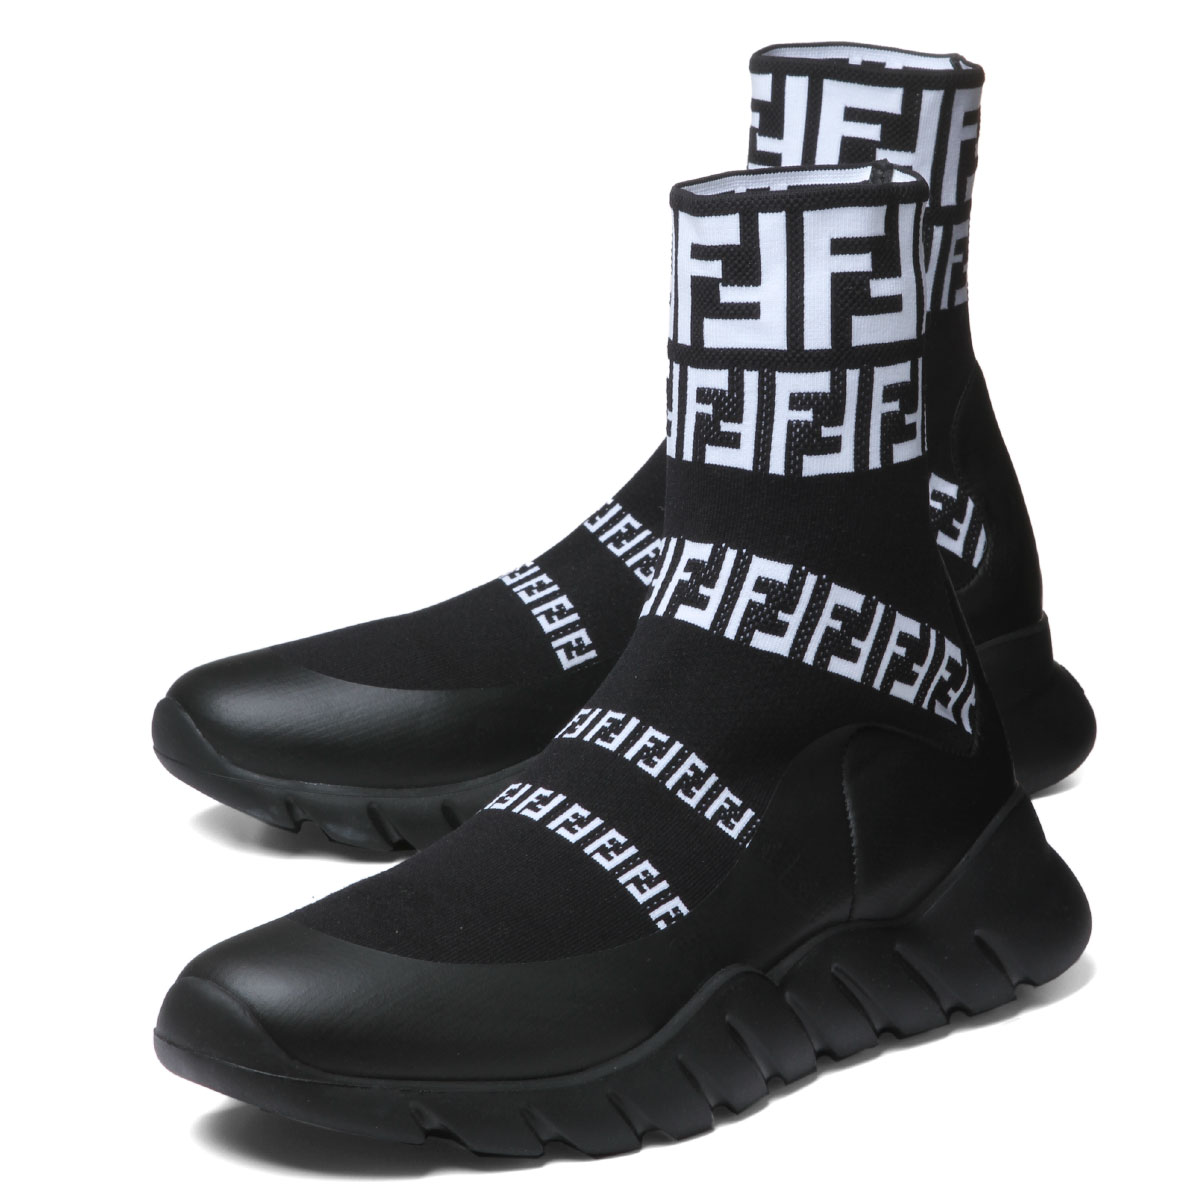 importshopdouble: Fendi FENDI shoes men 7E1163 A3XH F0Y68 sneakers ...